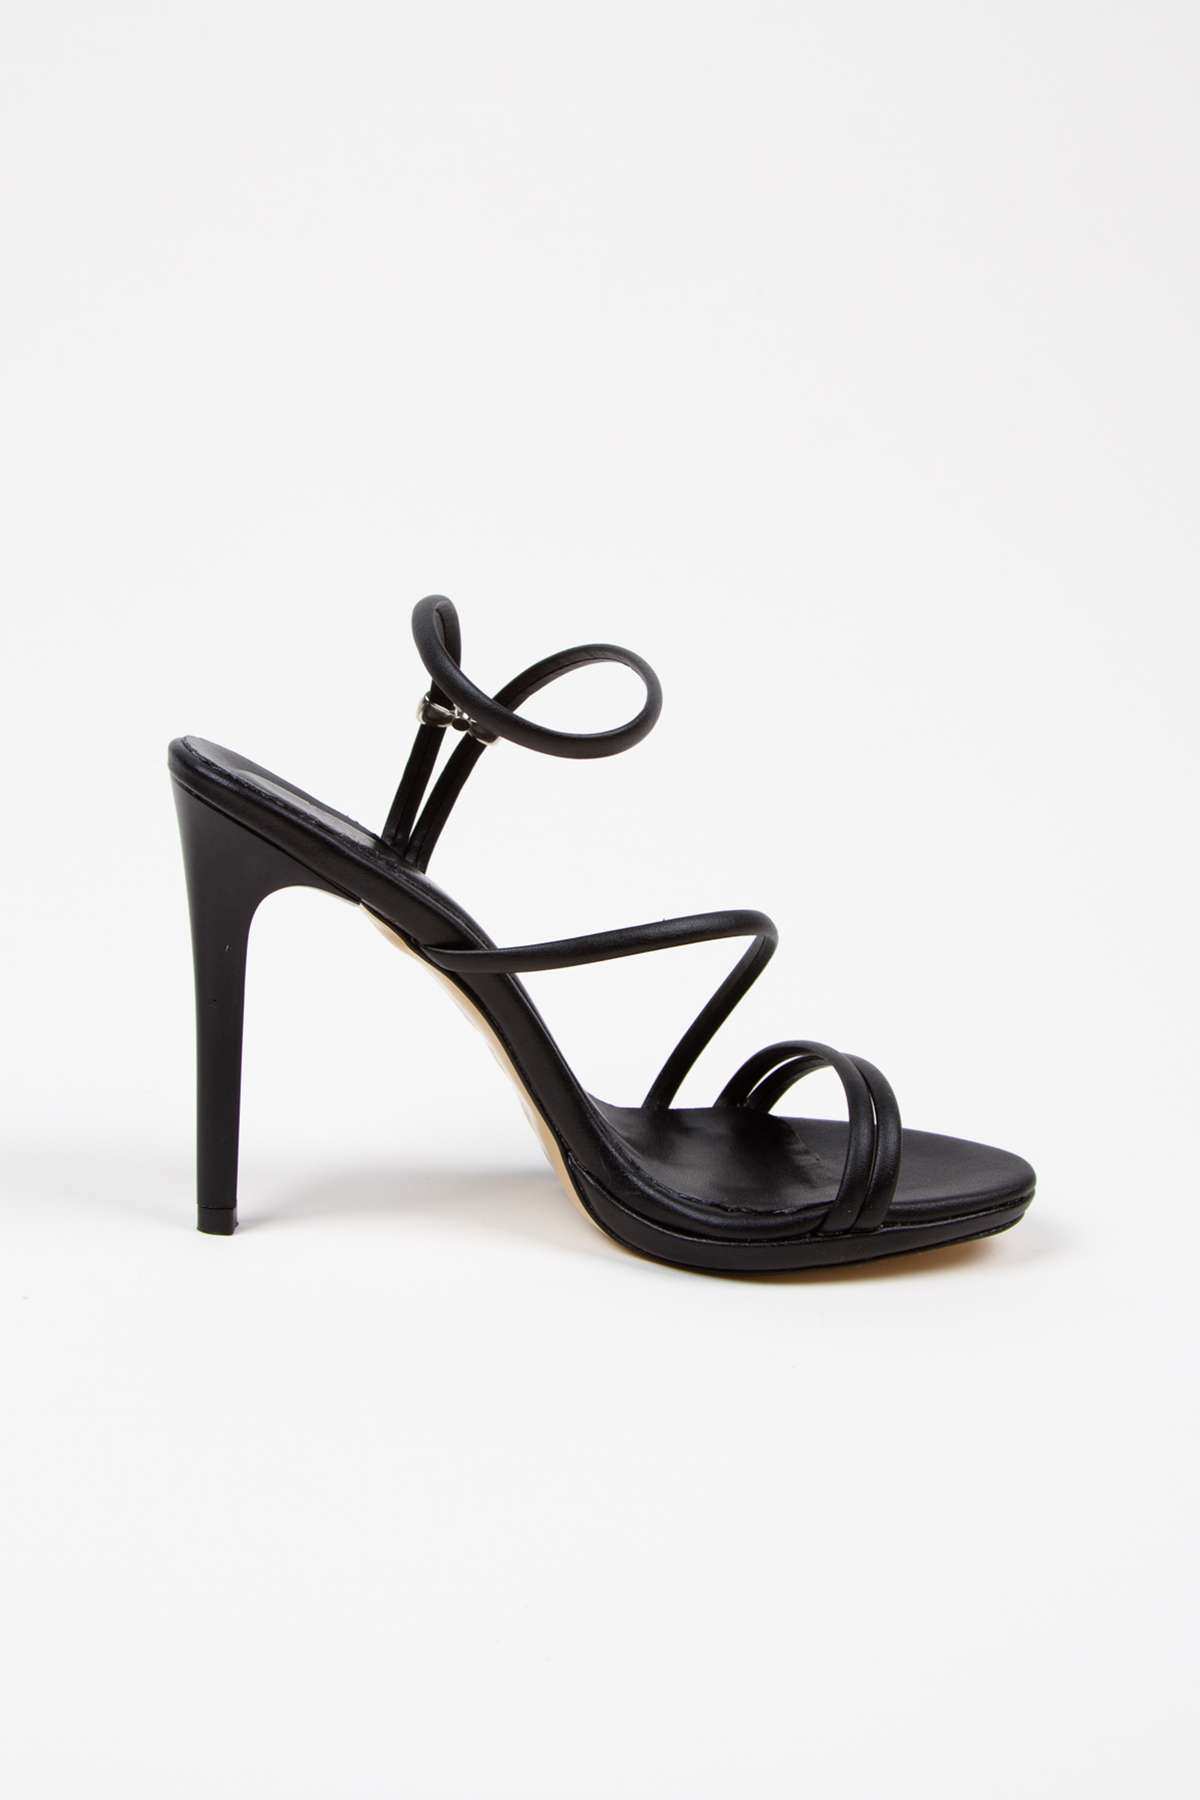 Kadın Yazlık 10 cm Siyah İnce Topuklu Platformlu Ayakkabı